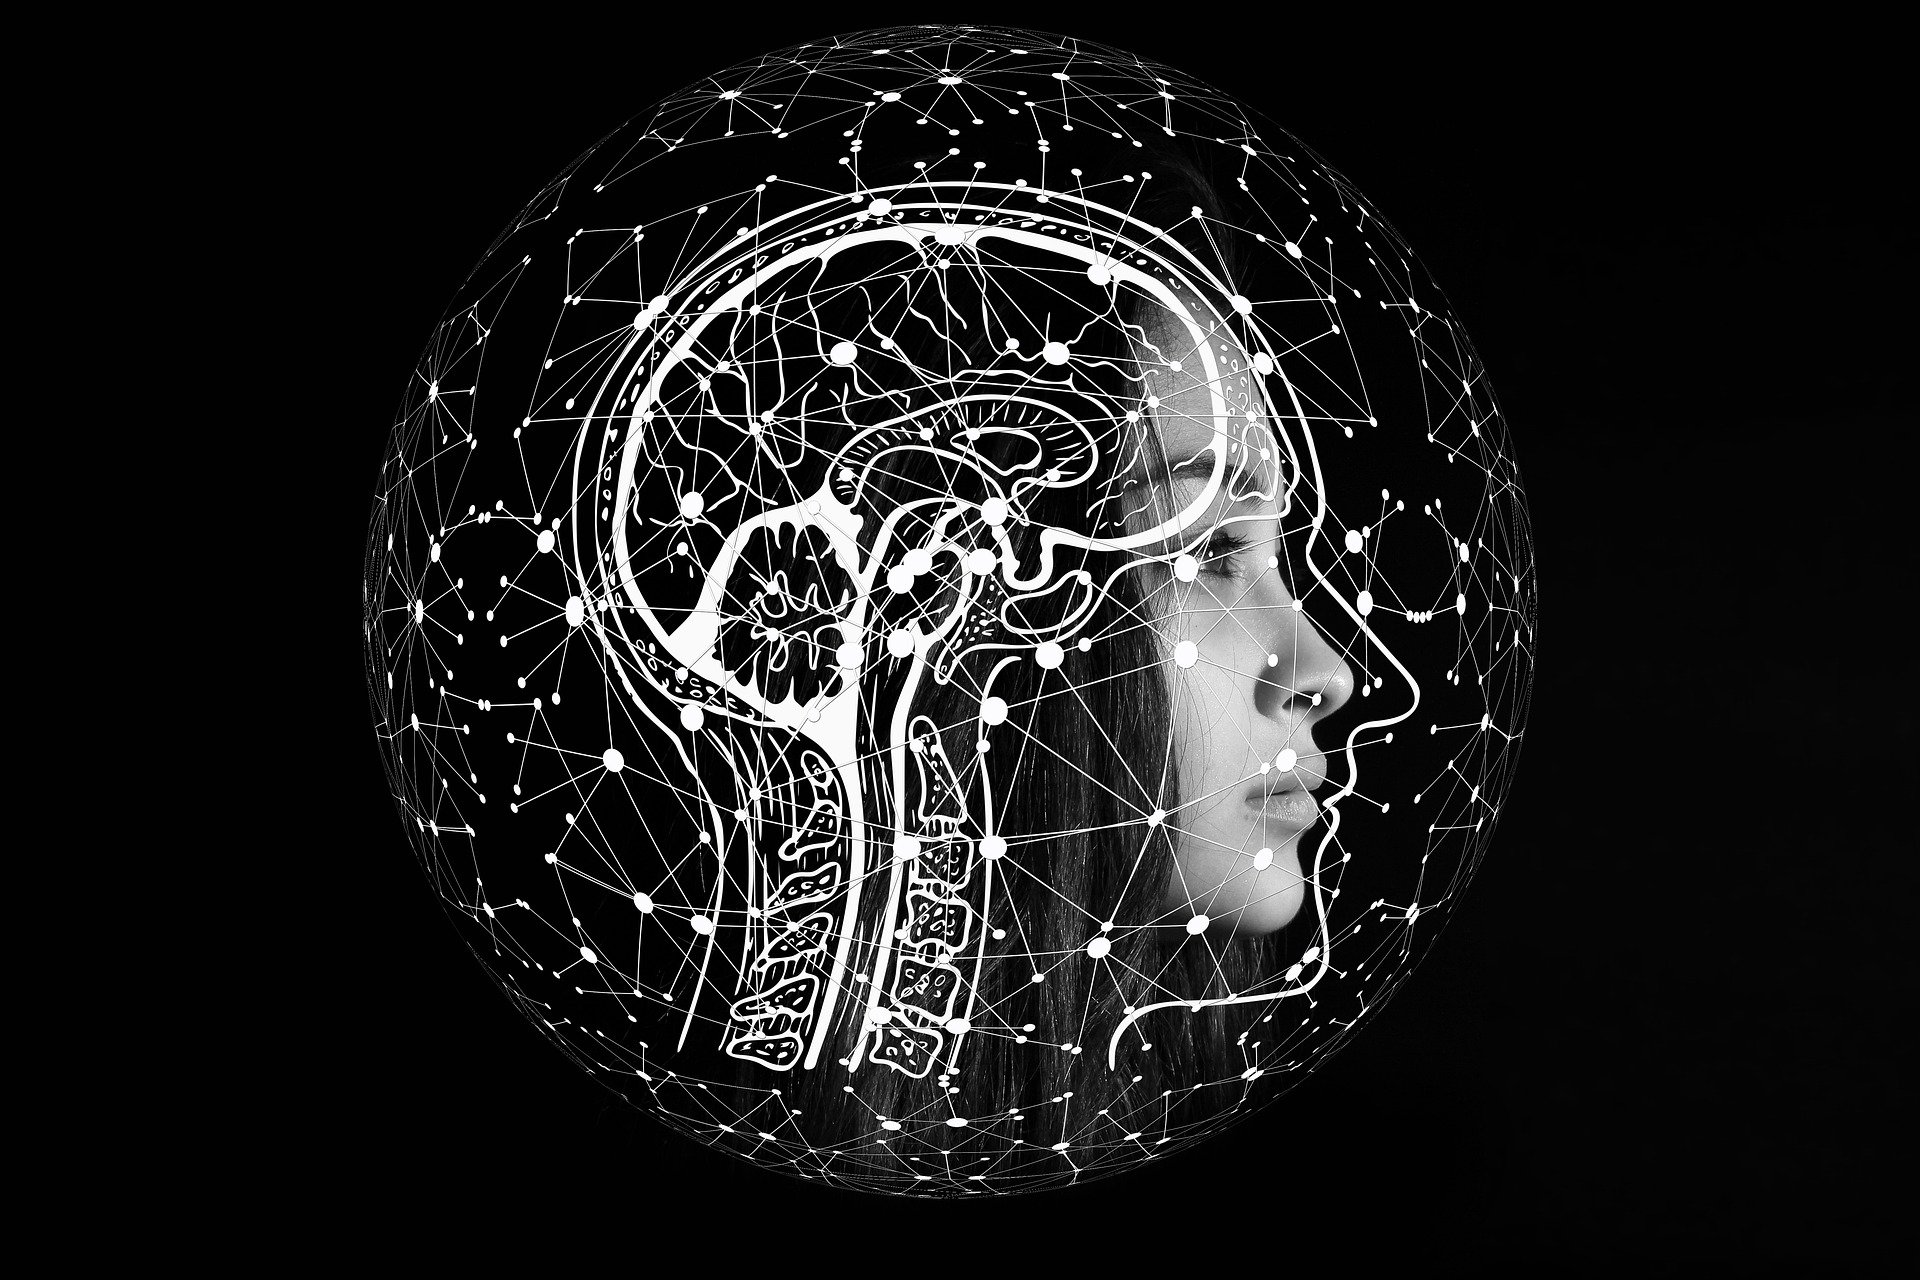 Grafika przedstawia widzianą z profilu twarz dziewczyny. Na zdjęcie naniesiono rysunkowy mózg oraz górny odcinek kręgosłupa. Wszystko to zamknięte jest w kuli złożonej z punkcików połączonych liniami. Tło grafiki jest czarne.